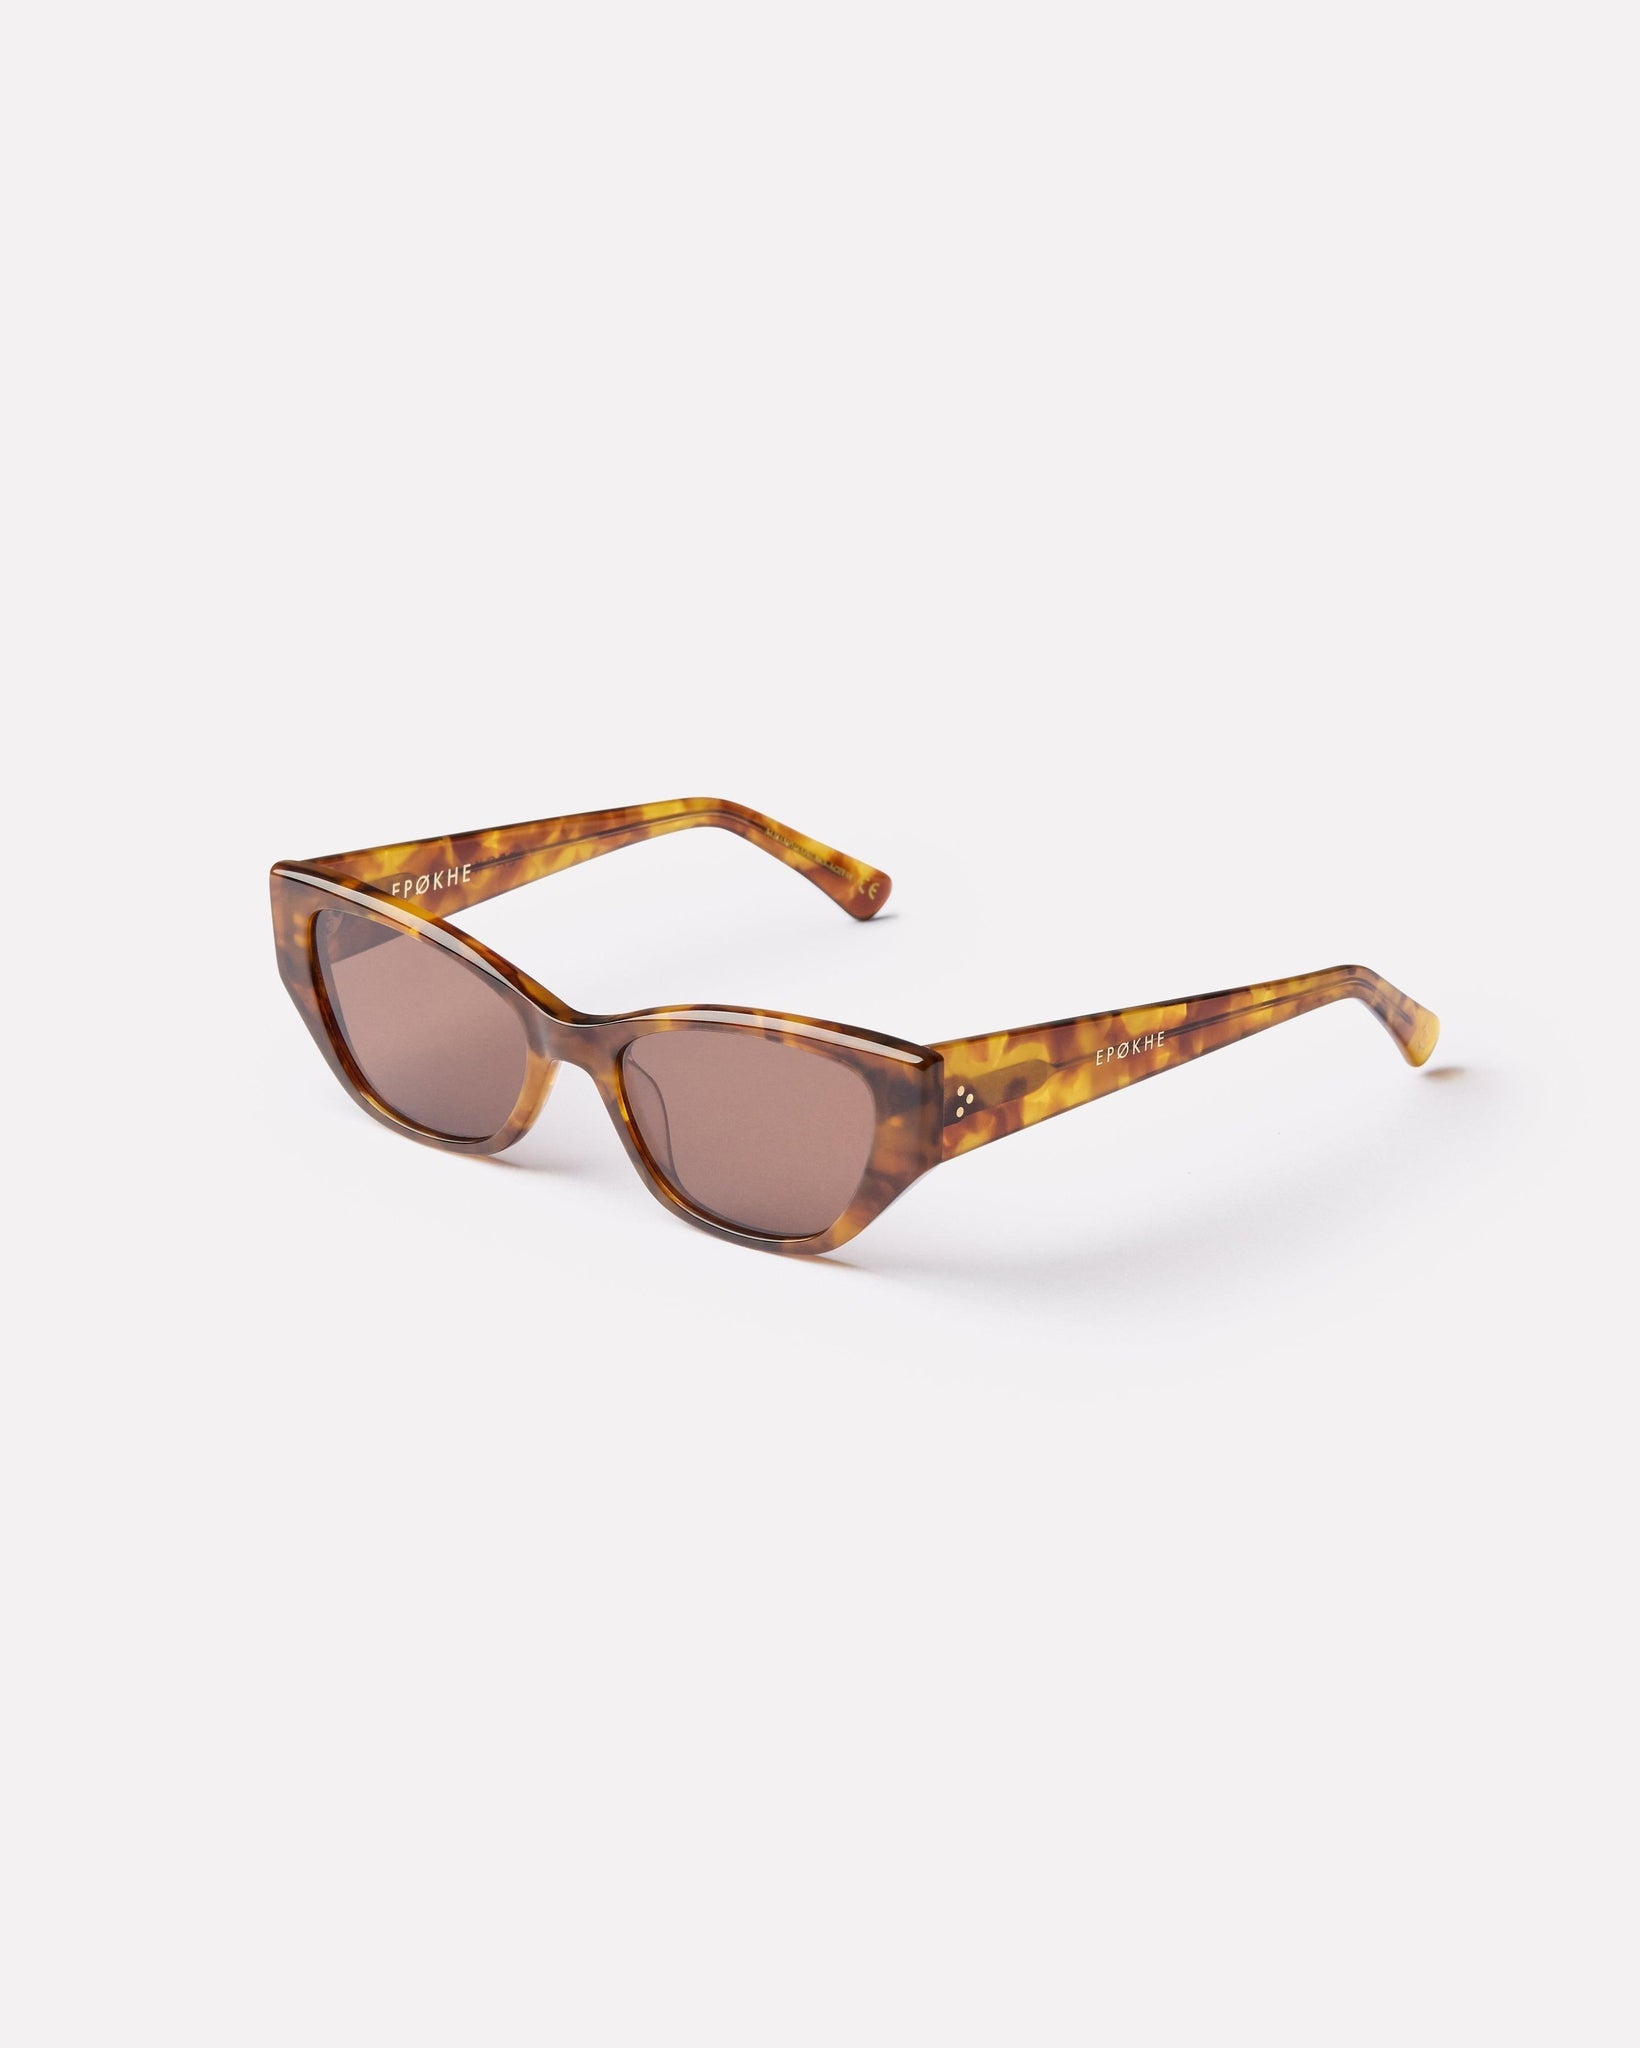 Reprise - Tortoise Polished / Bronze - Sunglasses - EPOKHE EYEWEAR